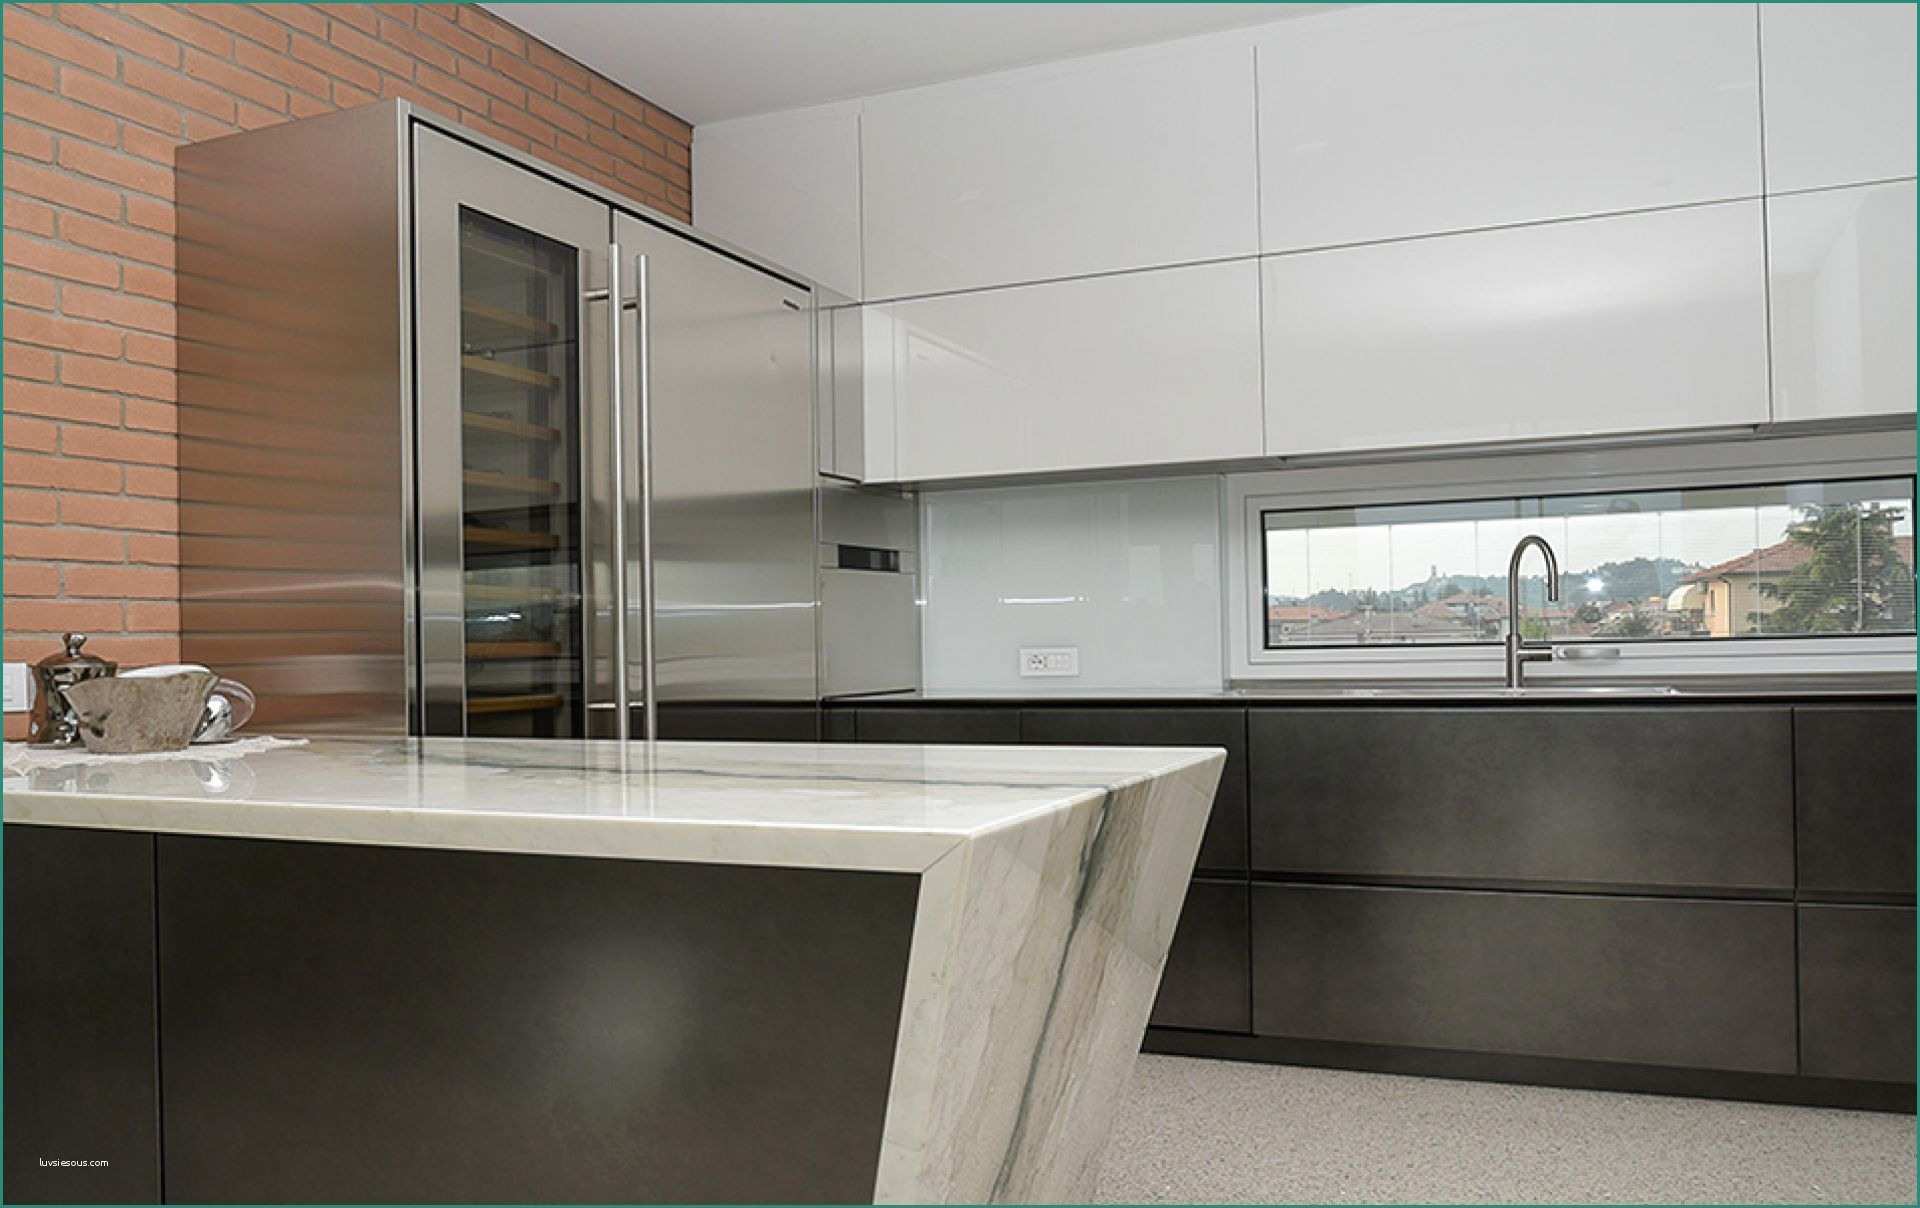 Cucina Lineare Moderna E Immagini Di Cucine Moderne Excellent soggiorno Open Space soggiorno